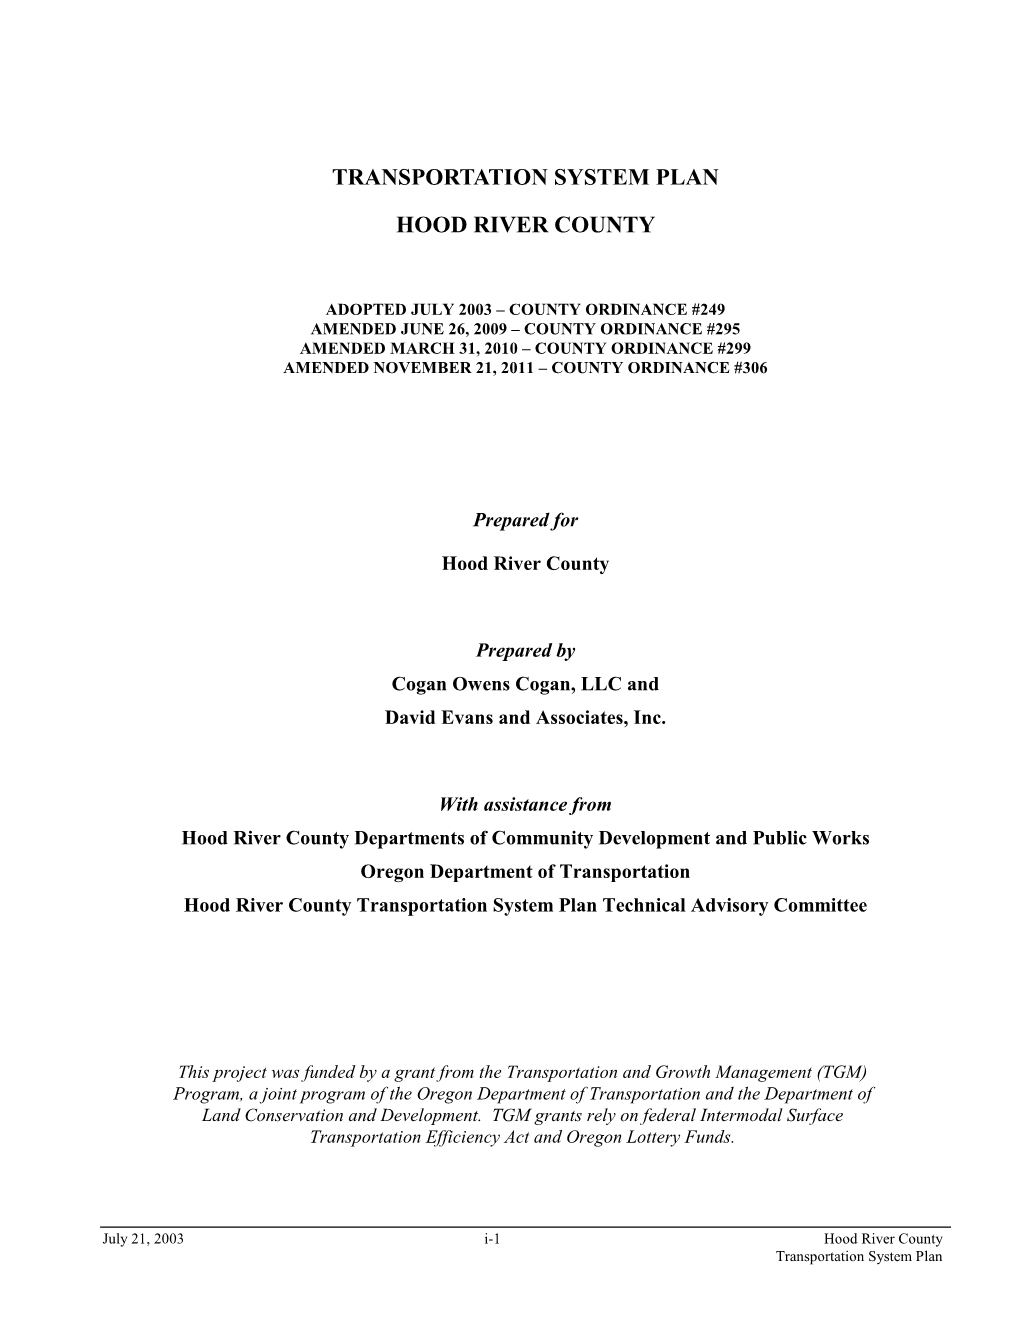 Transportation System Plan 2011